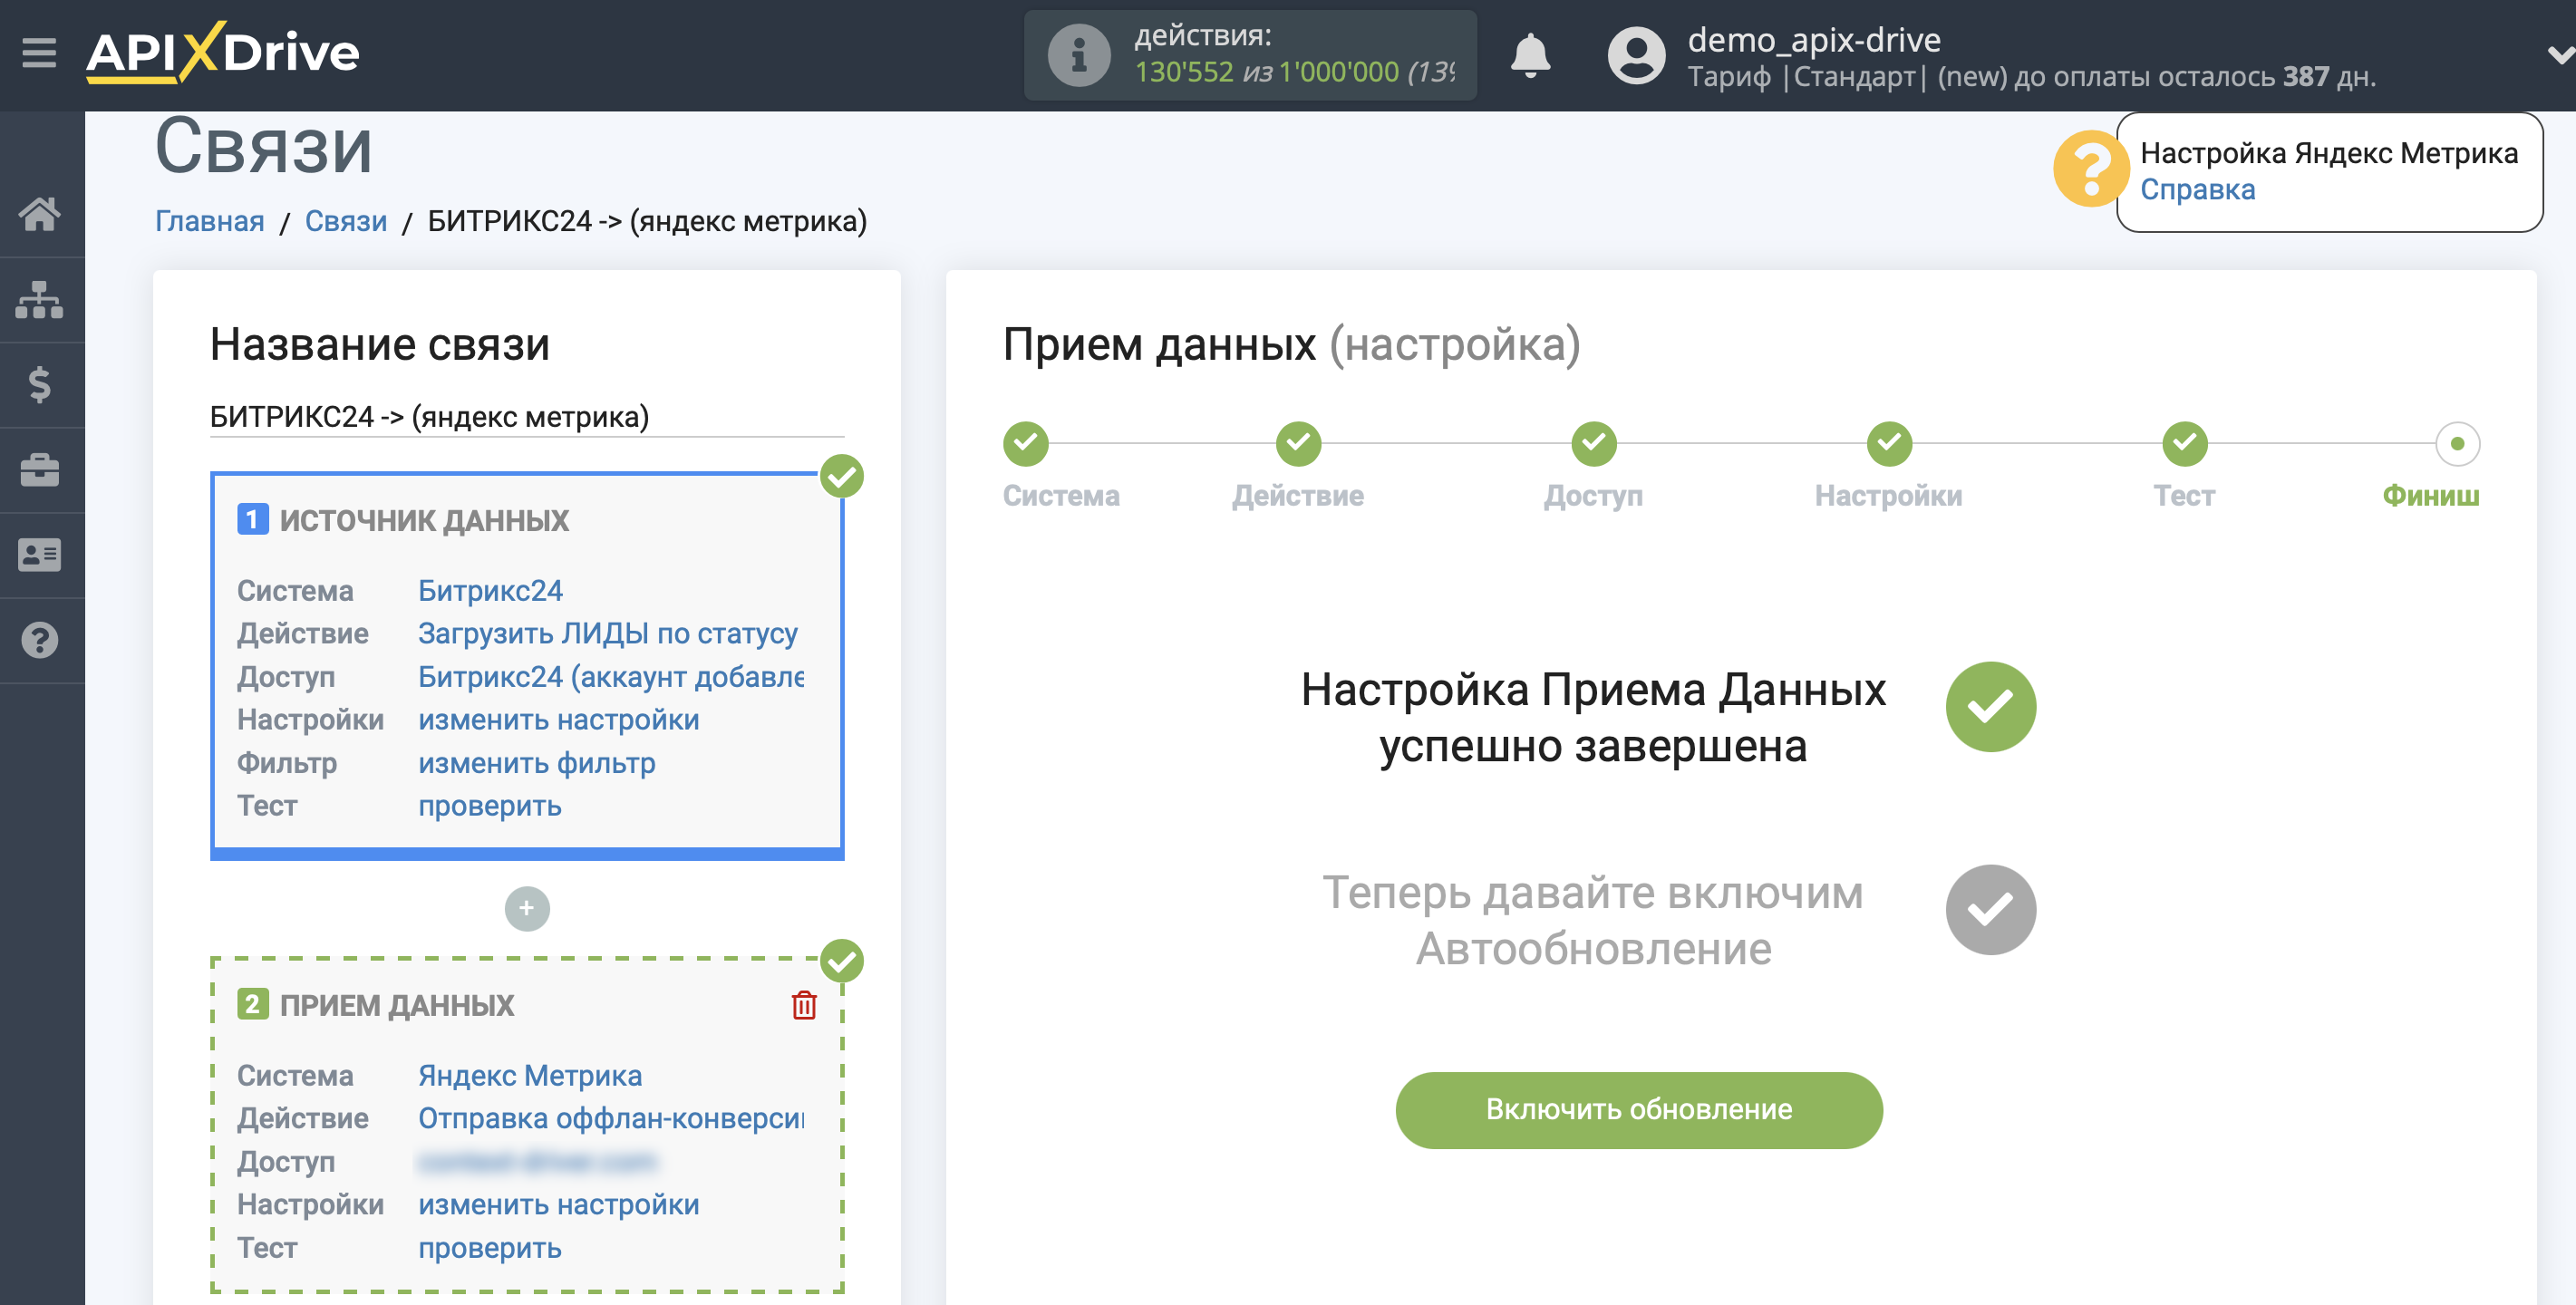 Импорт данных по конверсиям из Битрикс24 в Яндекс.Метрику | Переход к включению автообновления